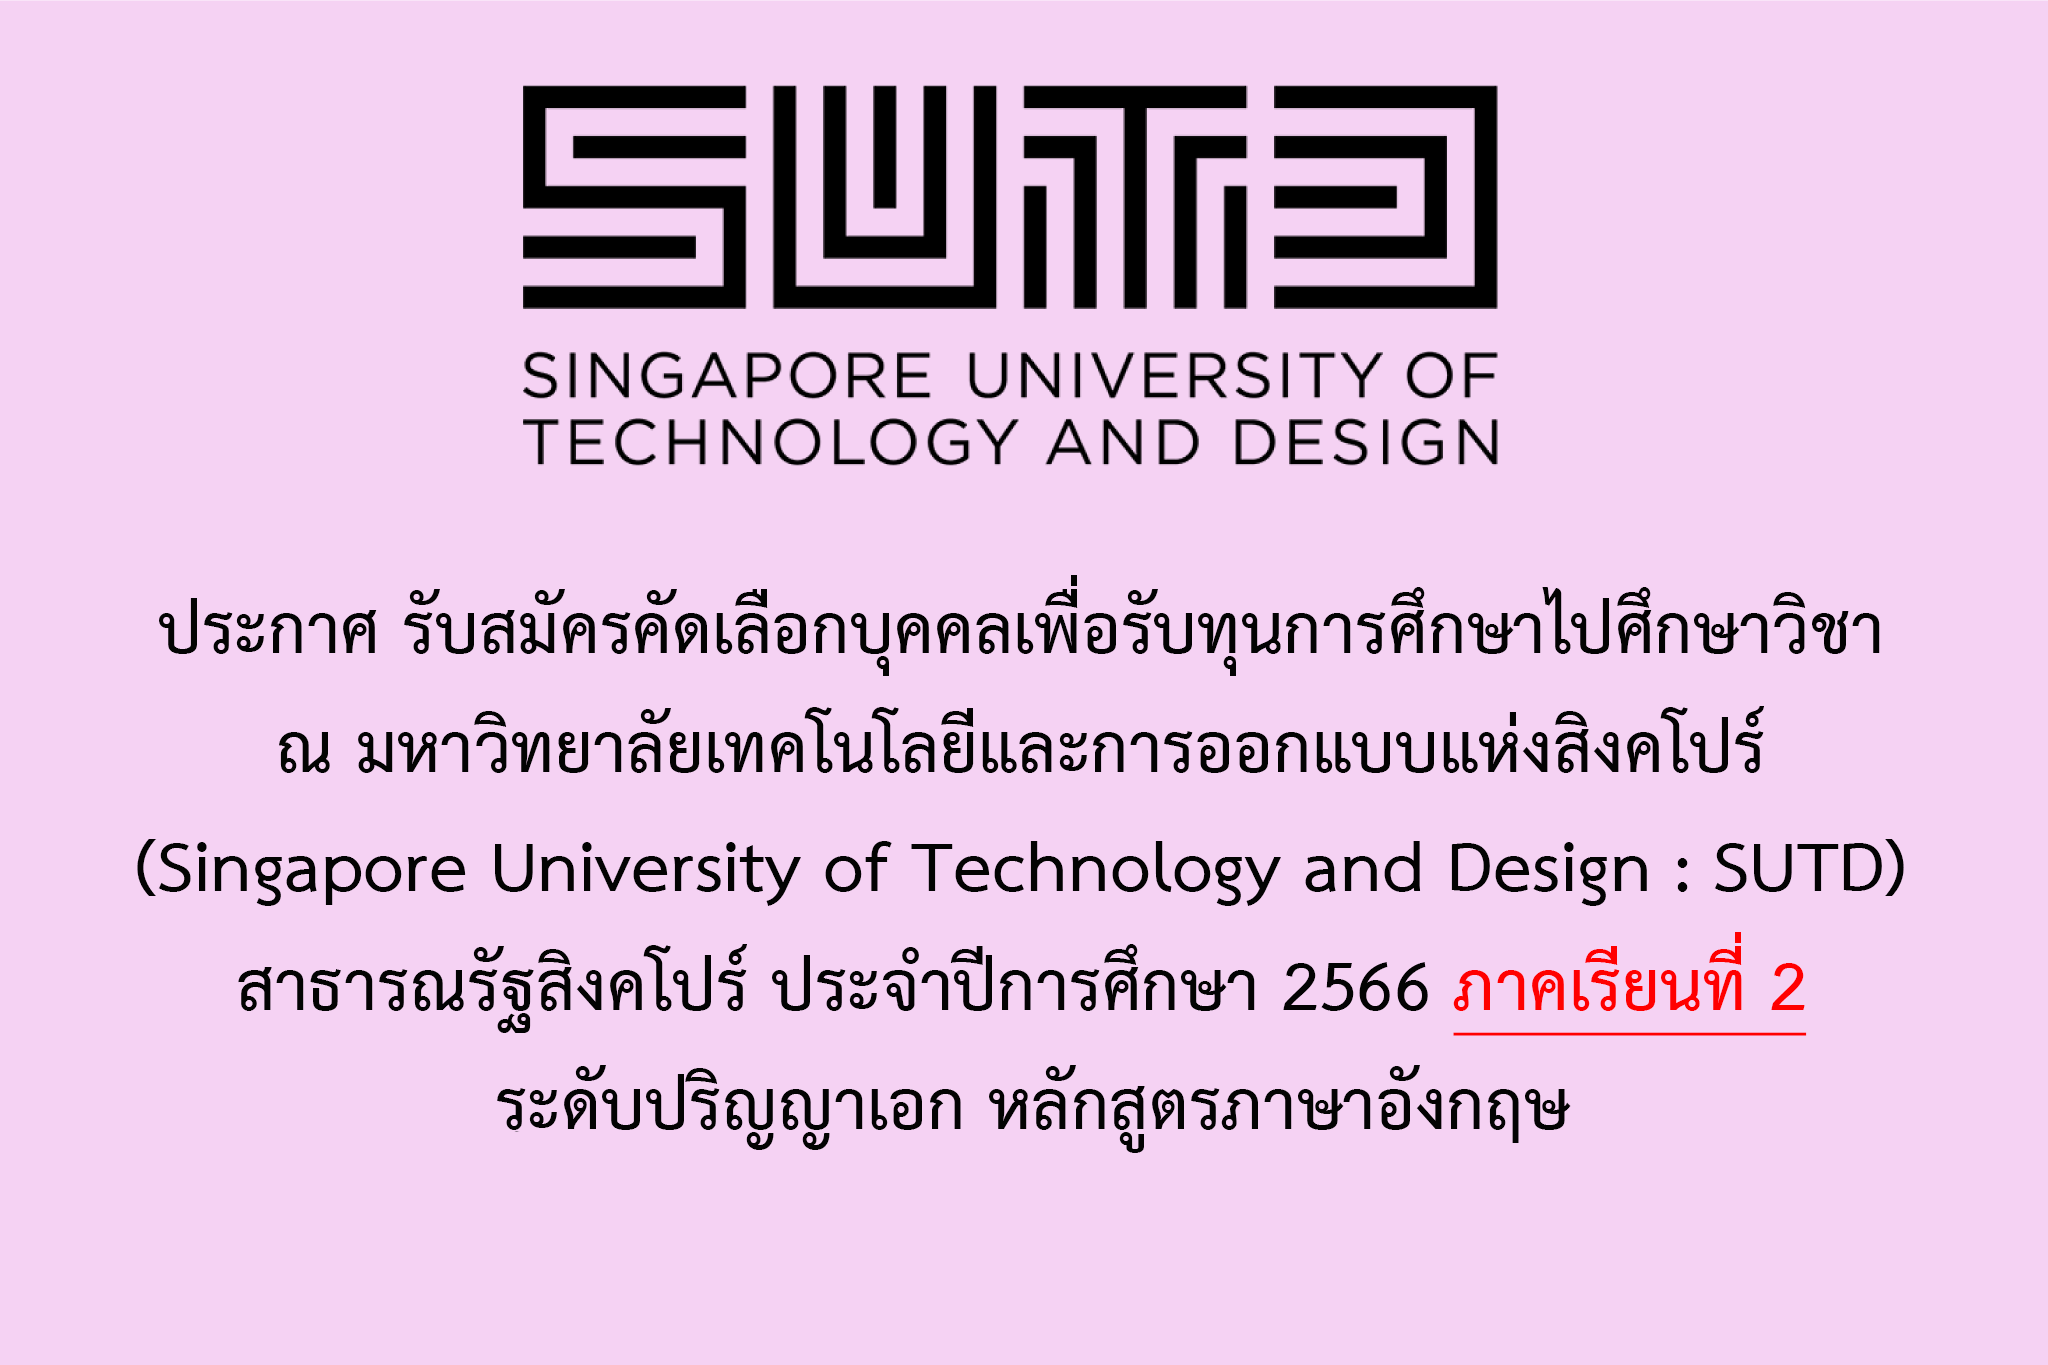 ประกาศ รับสมัครคัดเลือกบุคคลเพื่อรับทุนการศึกษาไปศึกษาวิชา ณ มหาวิทยาลัยเทคโนโลยีและการออกแบบแห่งสิงคโปร์ (Singapore University of Technology and Design : SUTD) สาธารณรัฐสิงคโปร์ ประจำปีการศึกษา 2566 ภาคเรียนที่ 2 ระดับปริญญาเอก หลักสูตรภาษาอังกฤษ